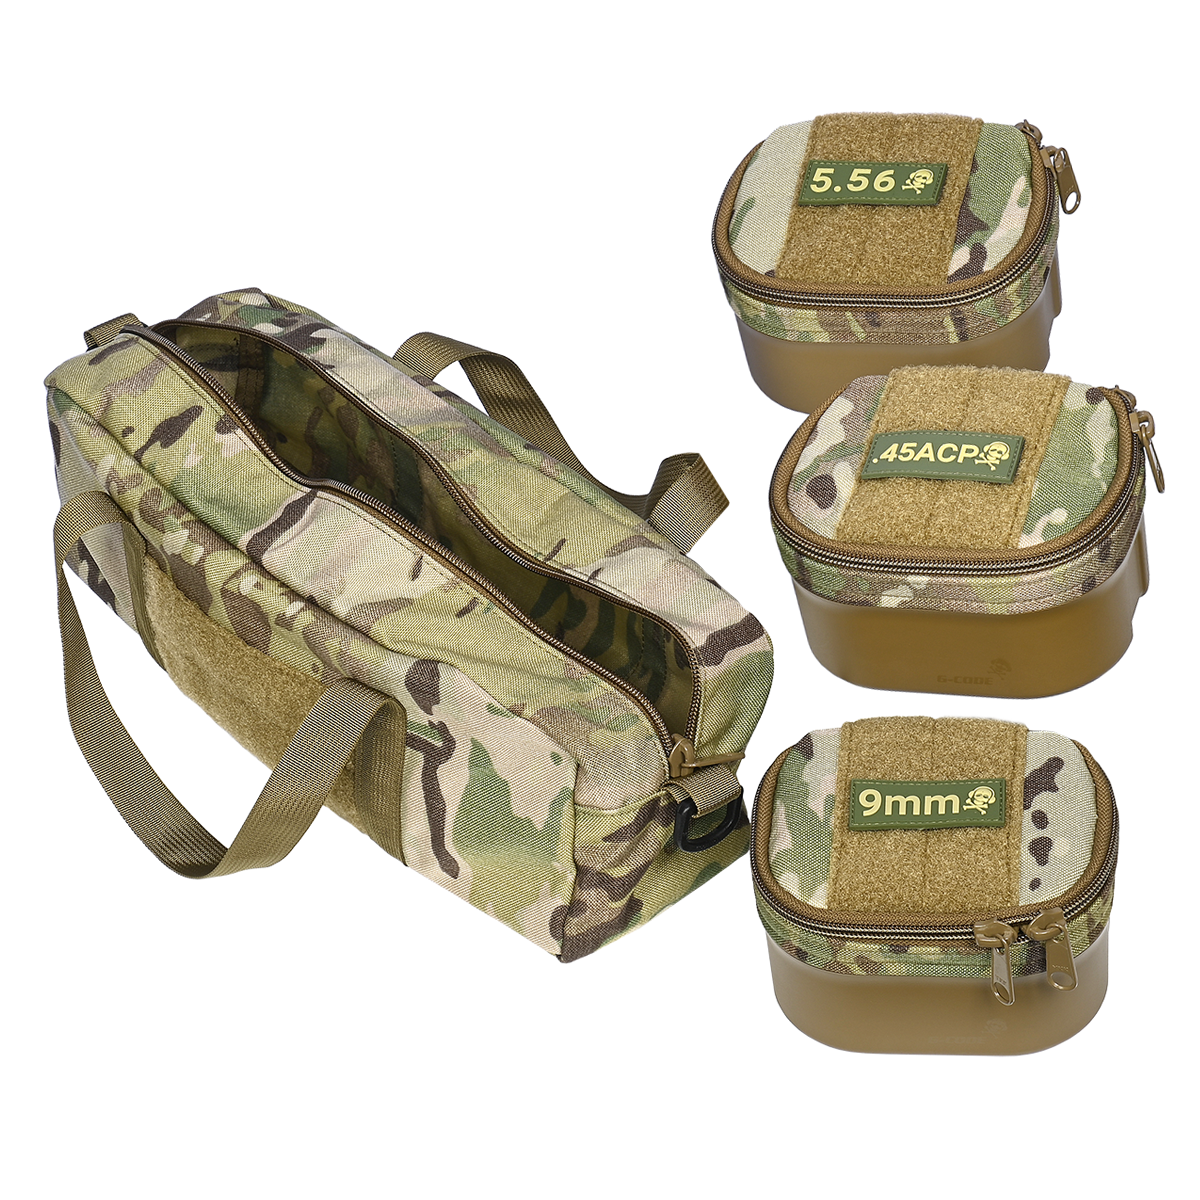 3fer Combo Pack Ammo & Range Bag : G-Code Holsters